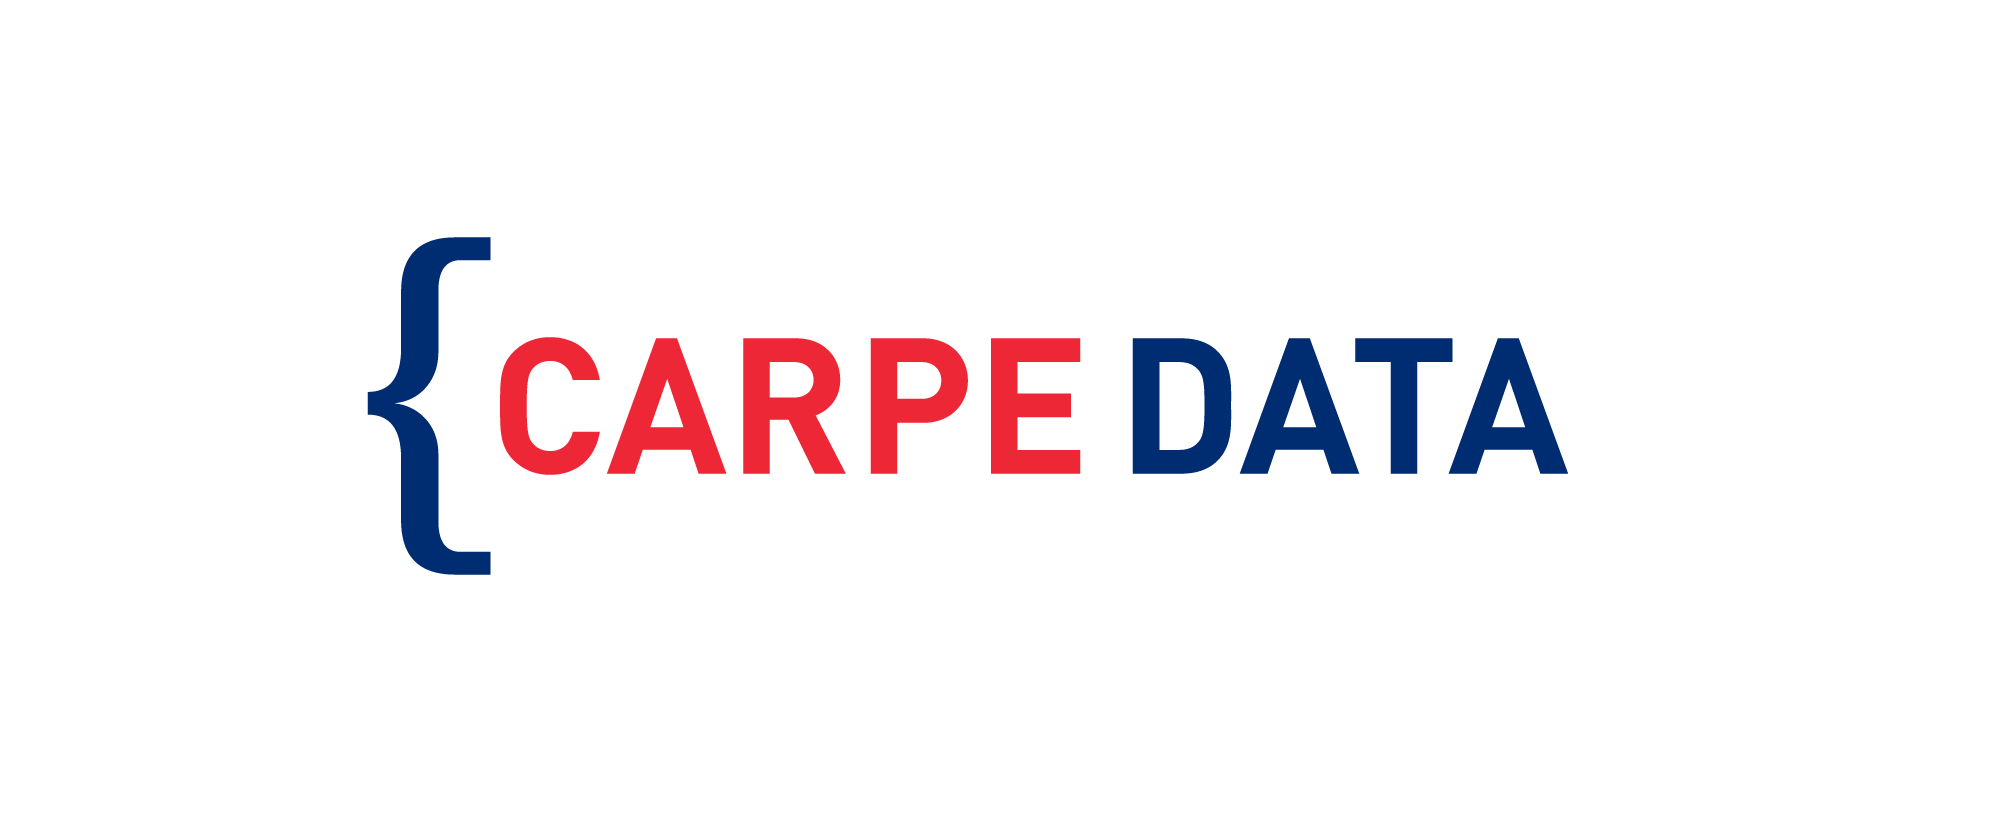 Carpe Data .png